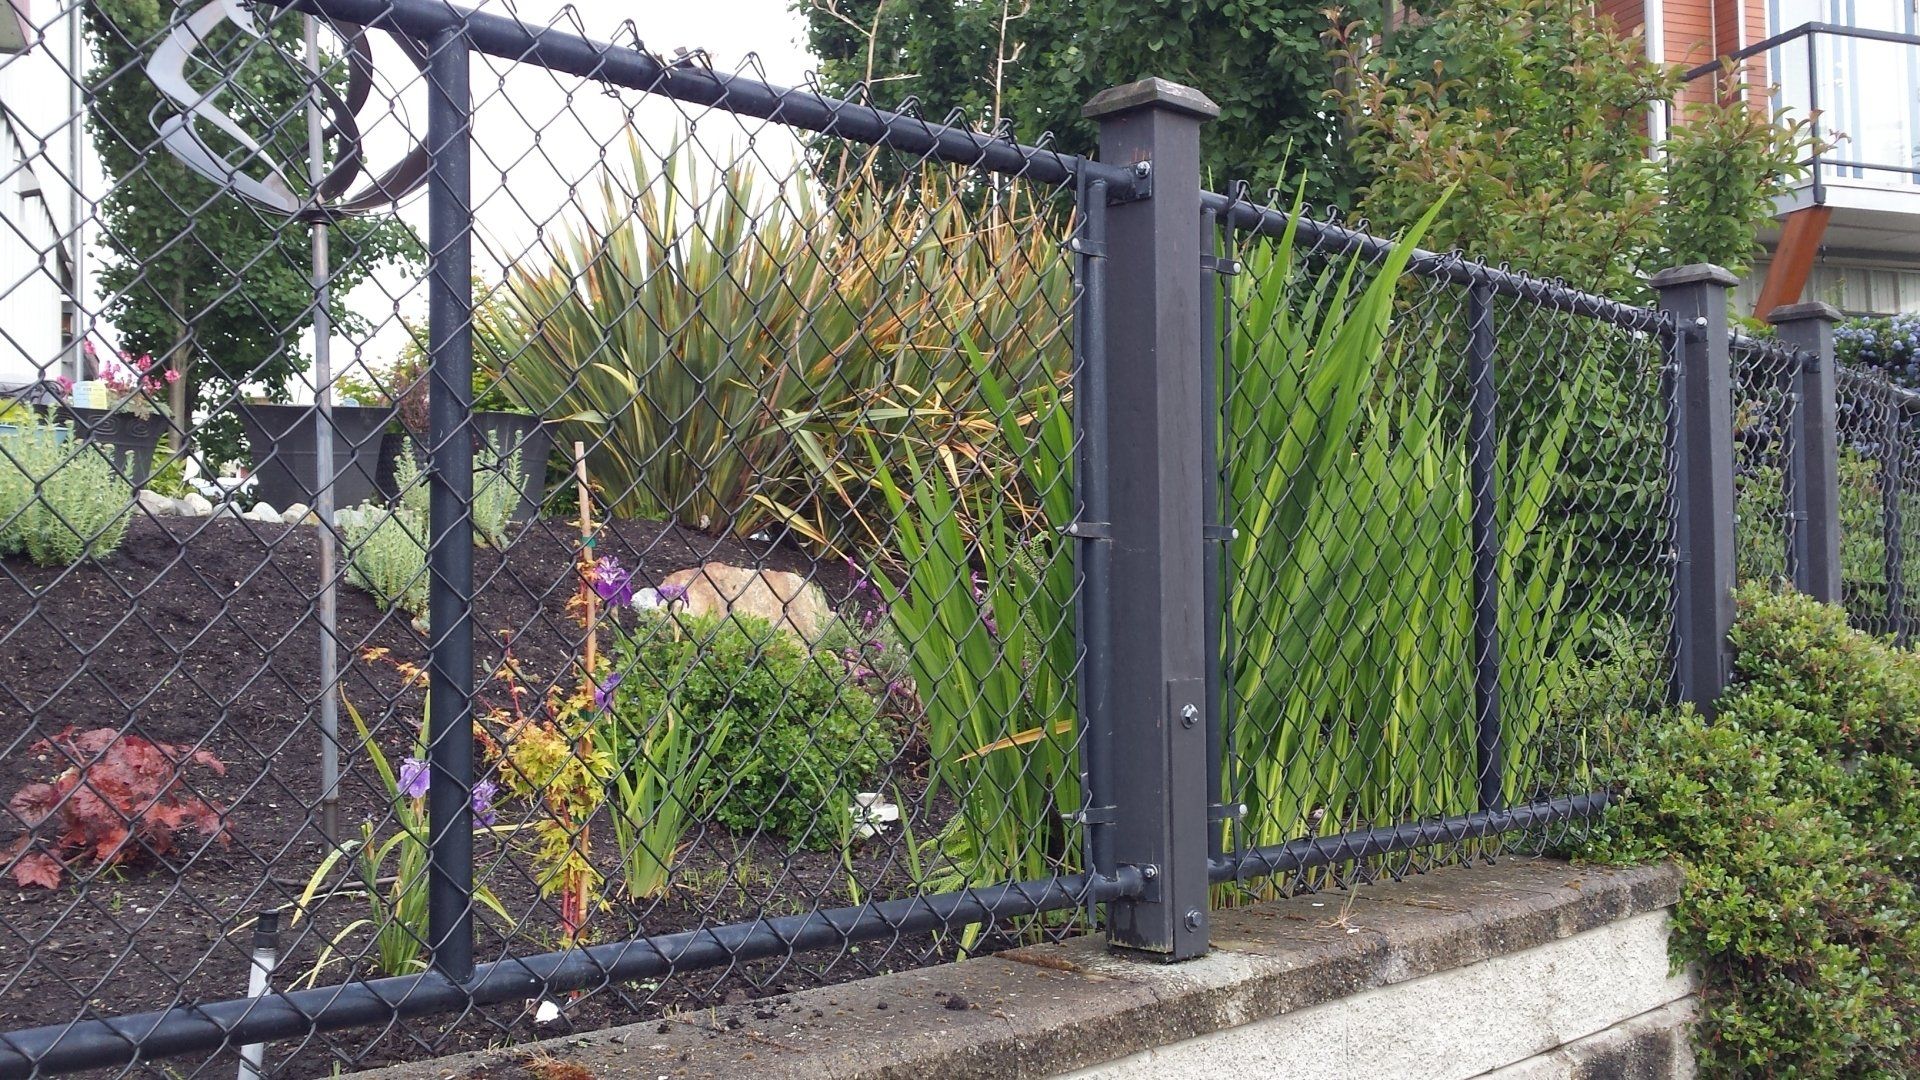 Victoria Custom Gates specializes in custom metal fences.